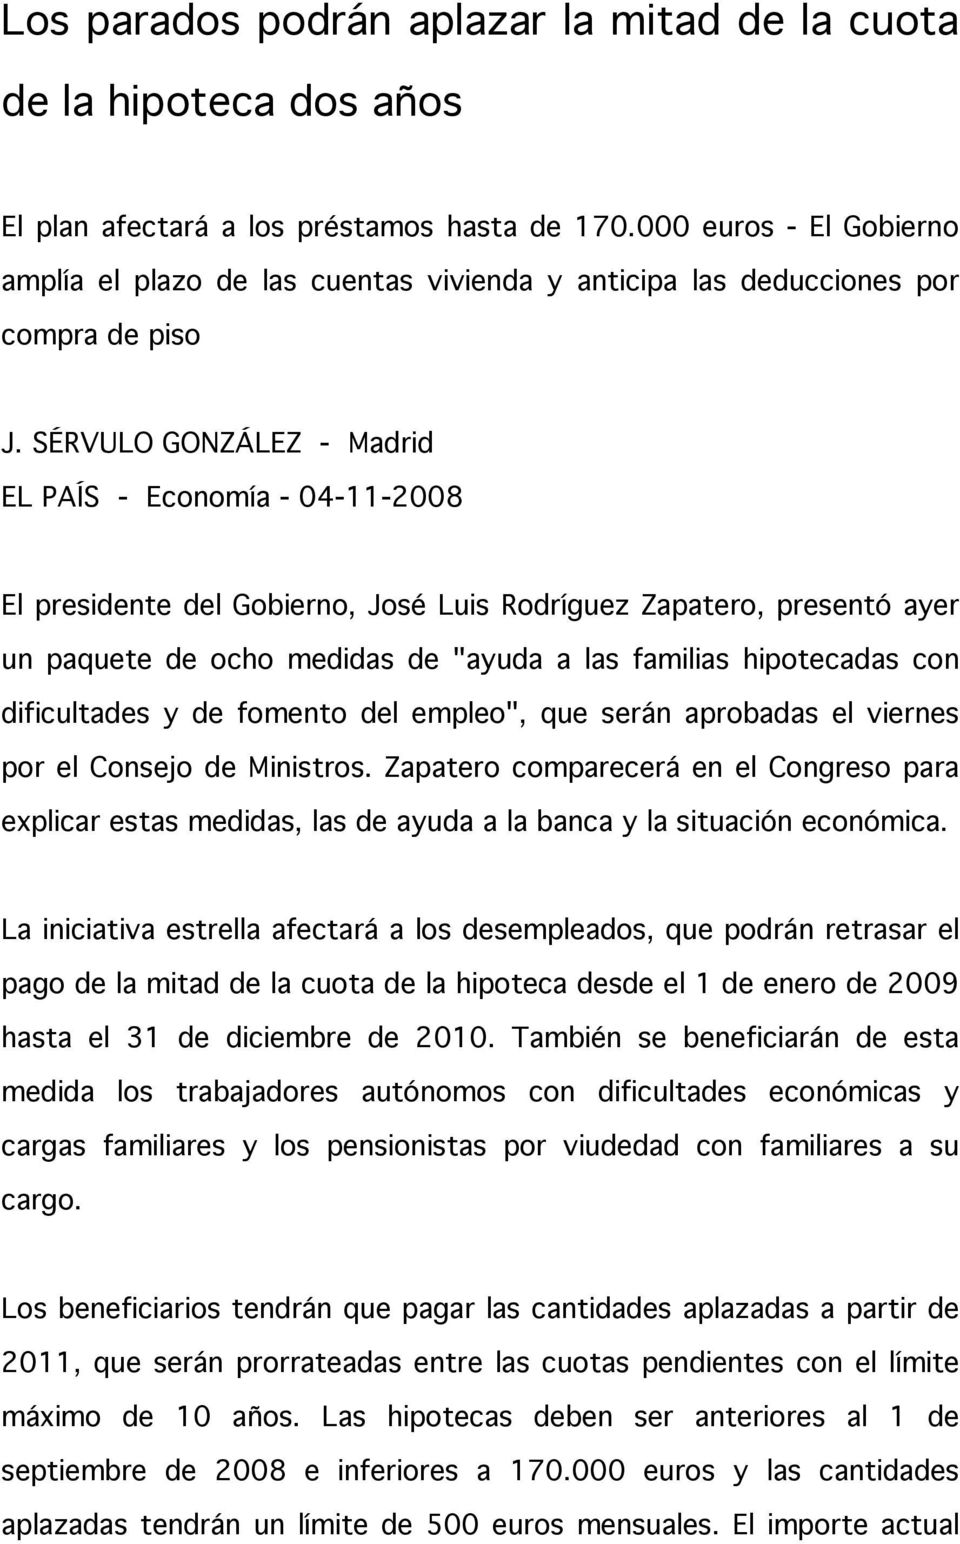 SÉRVULO GONZÁLEZ - Madrid EL PAÍS - Economía - 04-11-2008 El presidente del Gobierno, José Luis Rodríguez Zapatero, presentó ayer un paquete de ocho medidas de "ayuda a las familias hipotecadas con